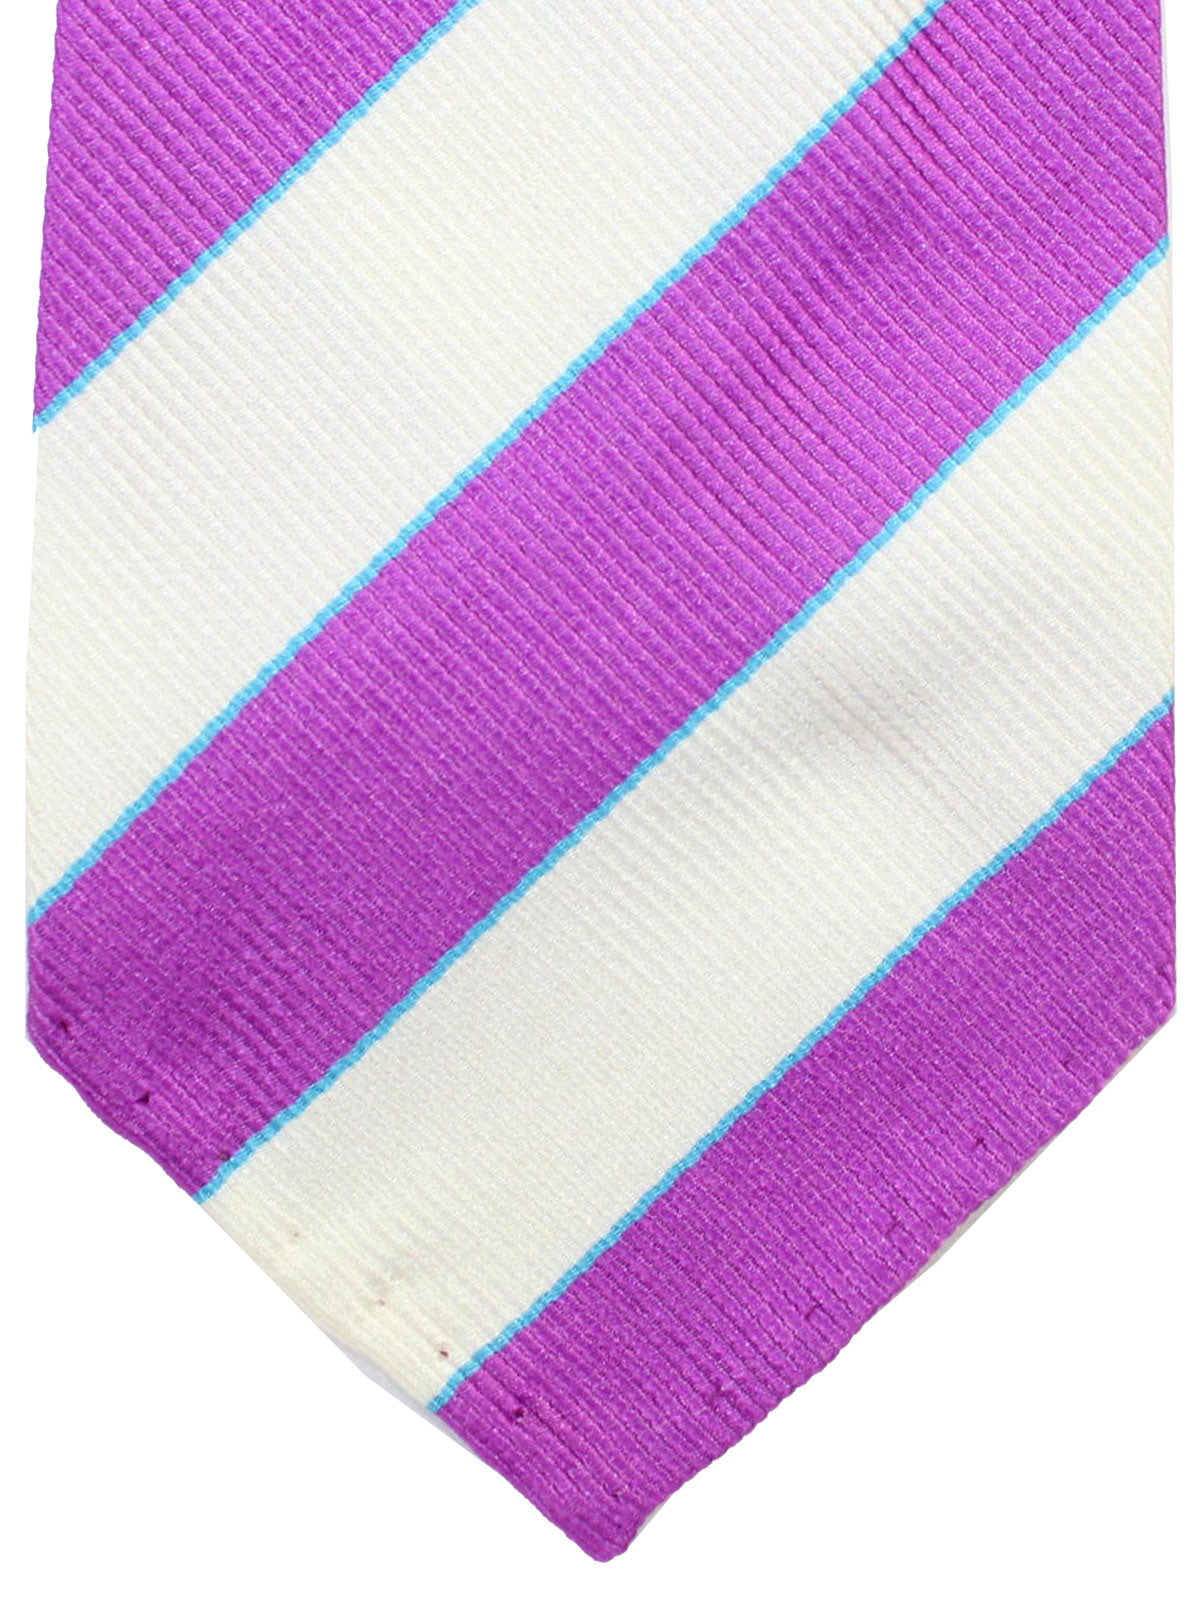 Cesare Attolini Unlined Tie White Lilac Aqua Stripes